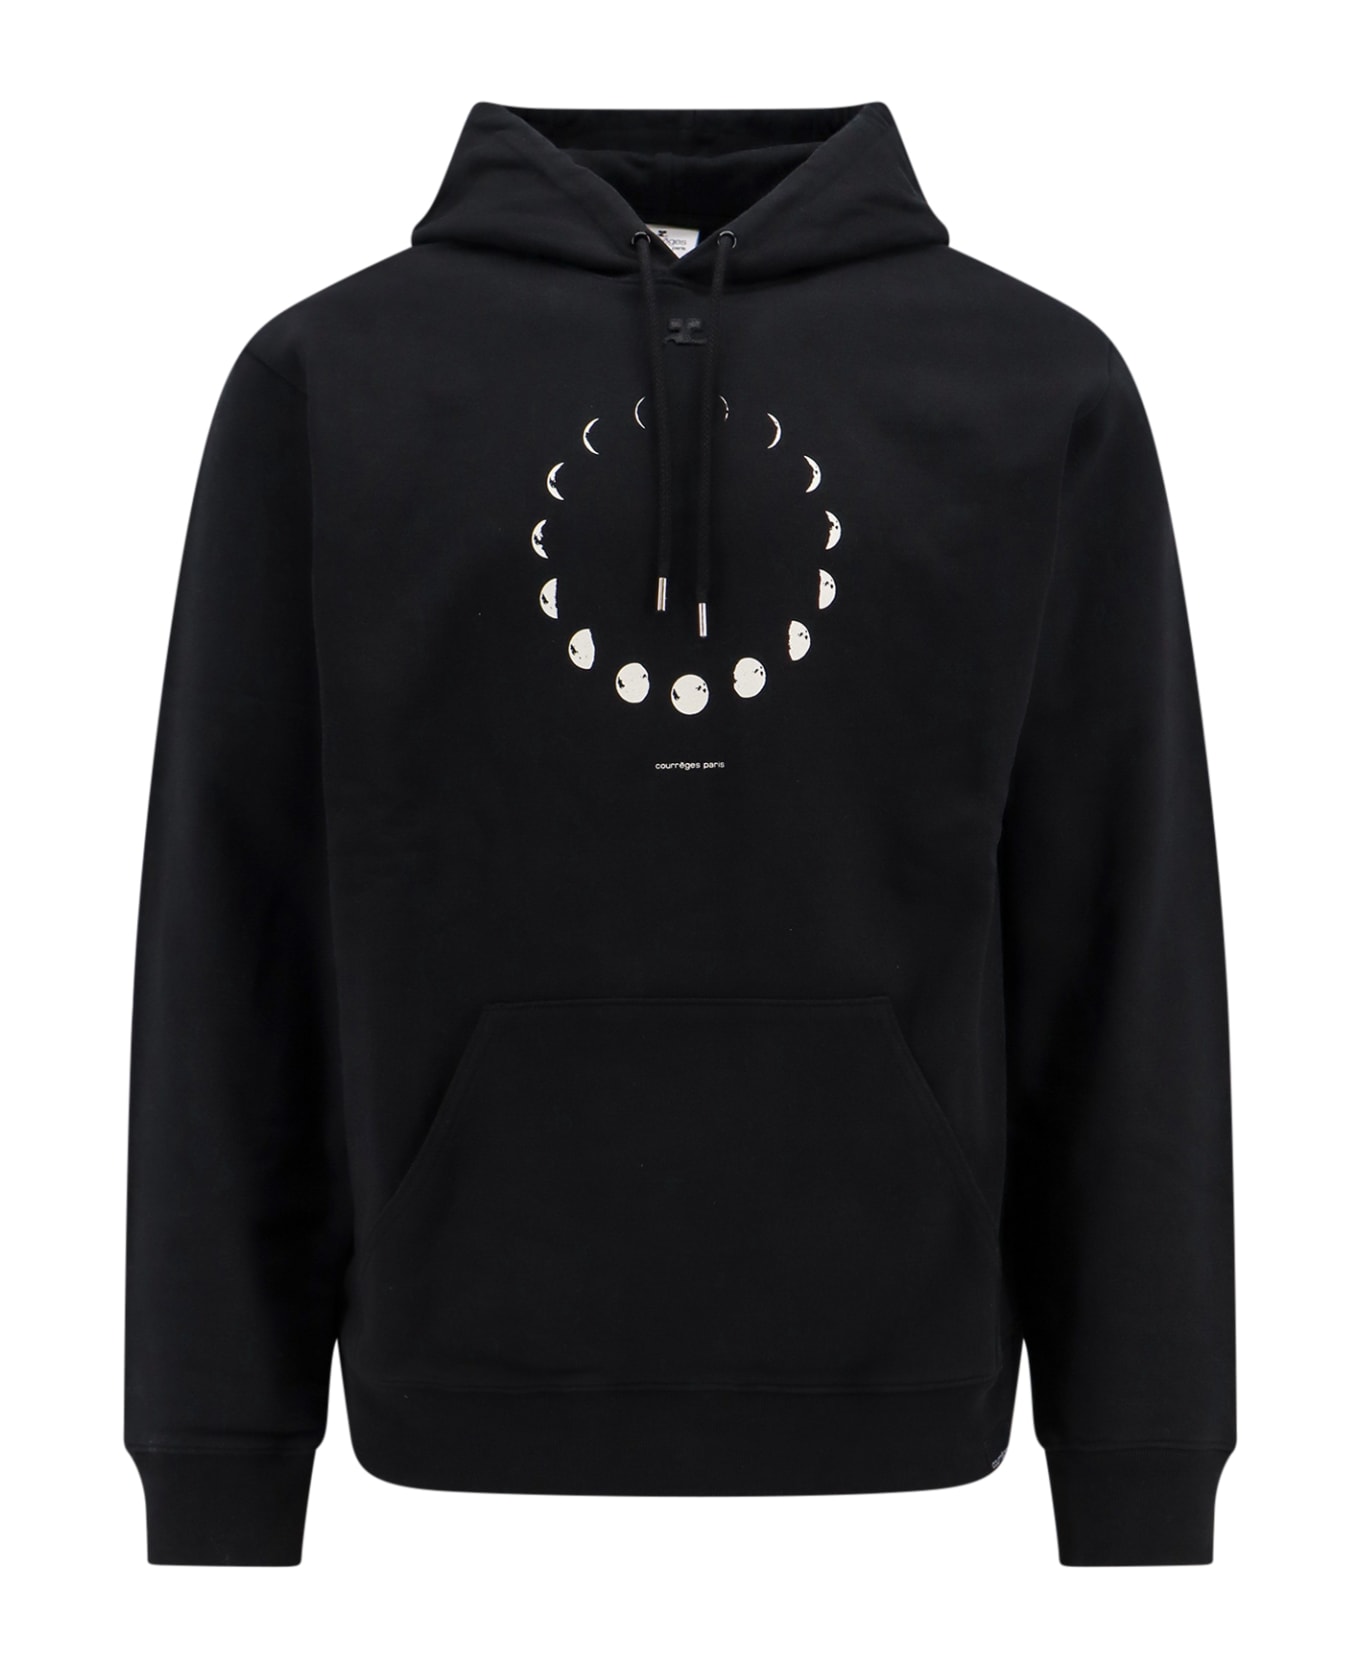 Courrèges Sweatshirt - Black